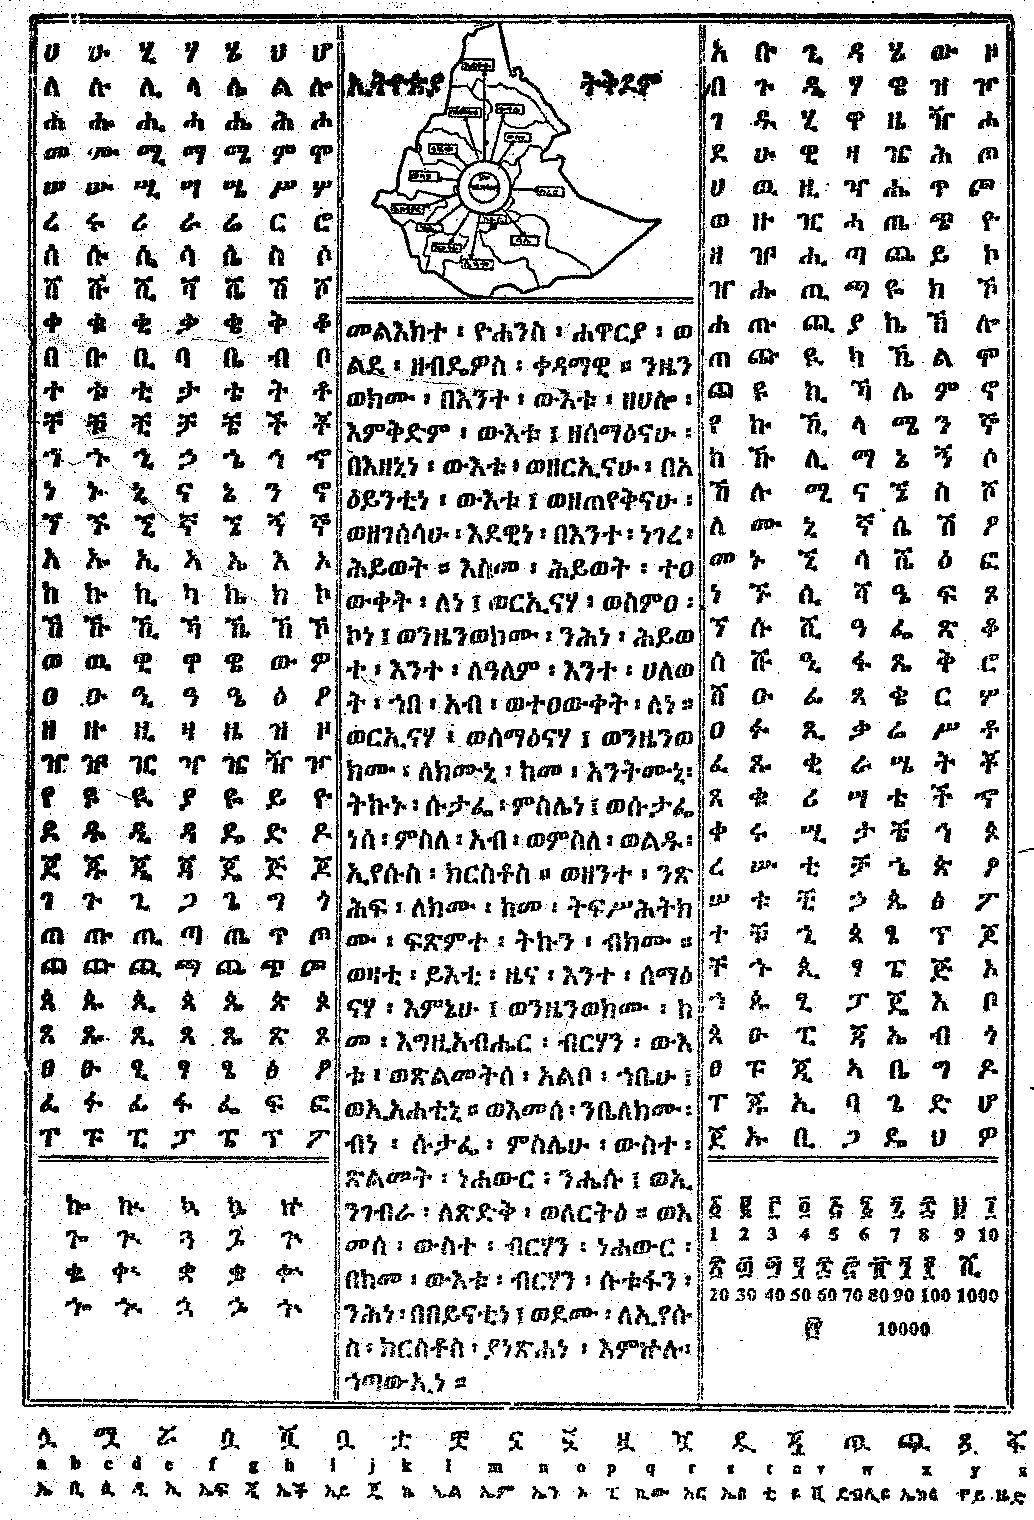 Amharic Script Image